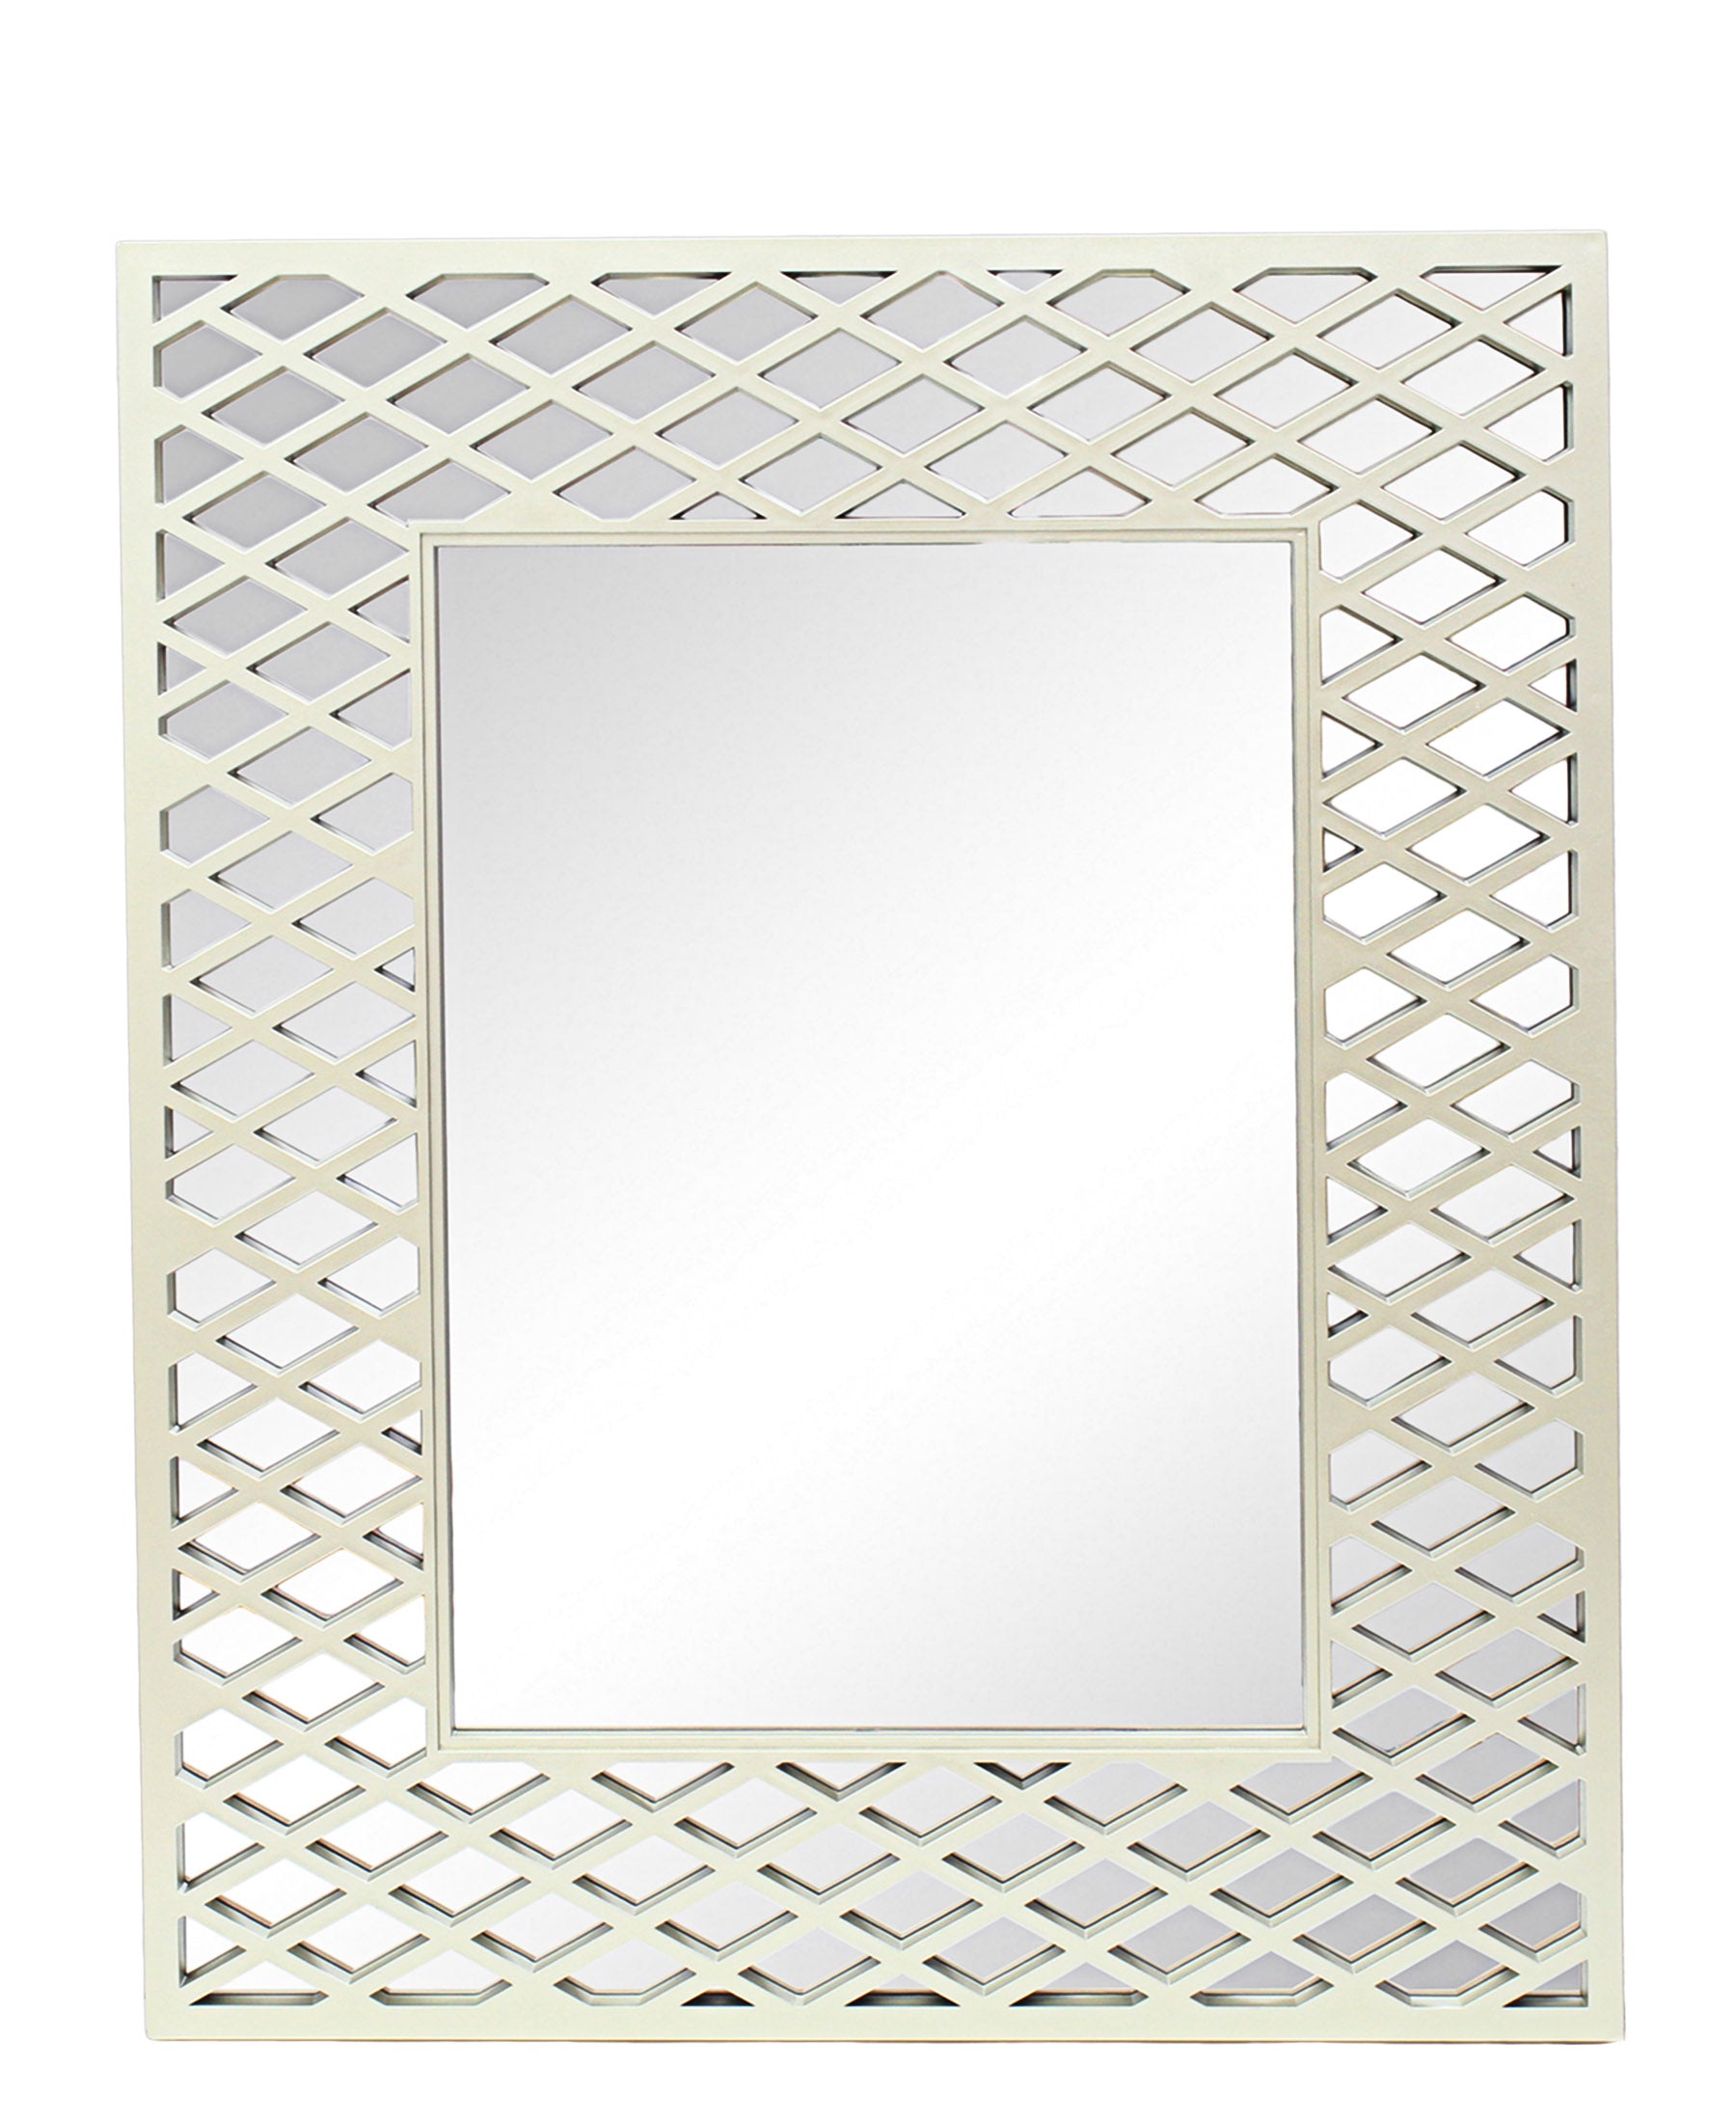 Urban Decor Striped Square Mirror - Gold